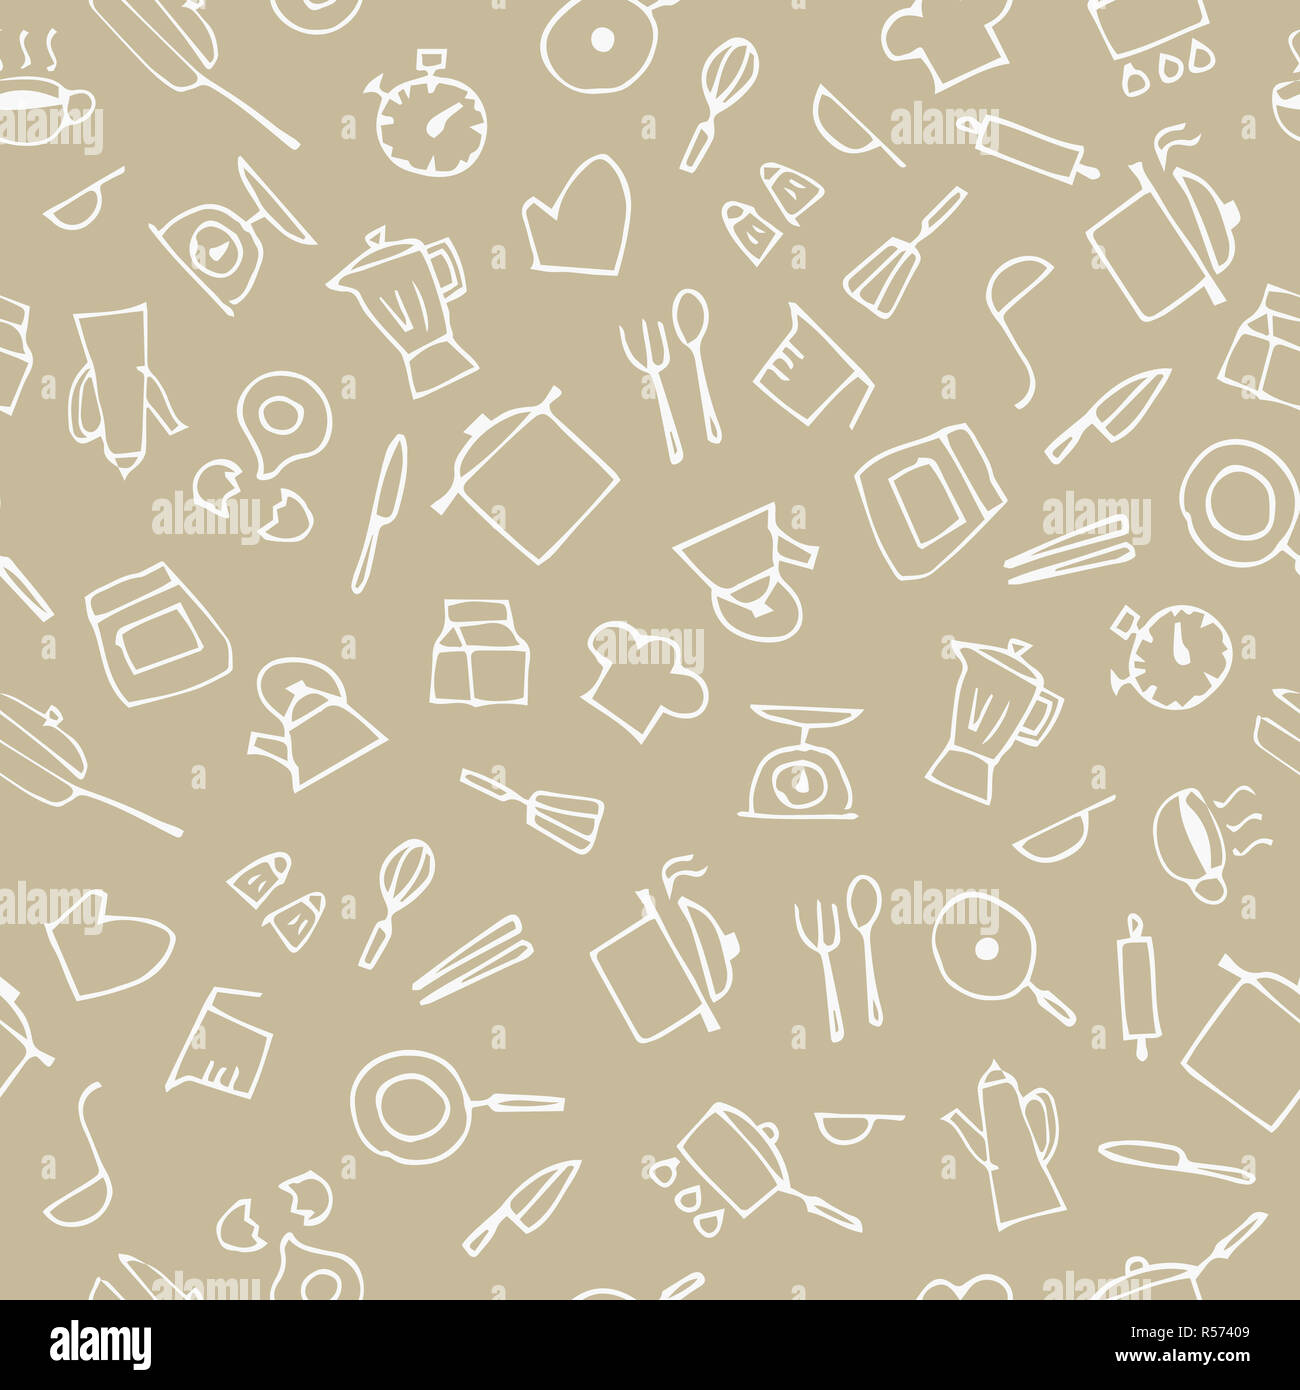 Handskizze Küche Sache Muster gezeichnet Stockfoto